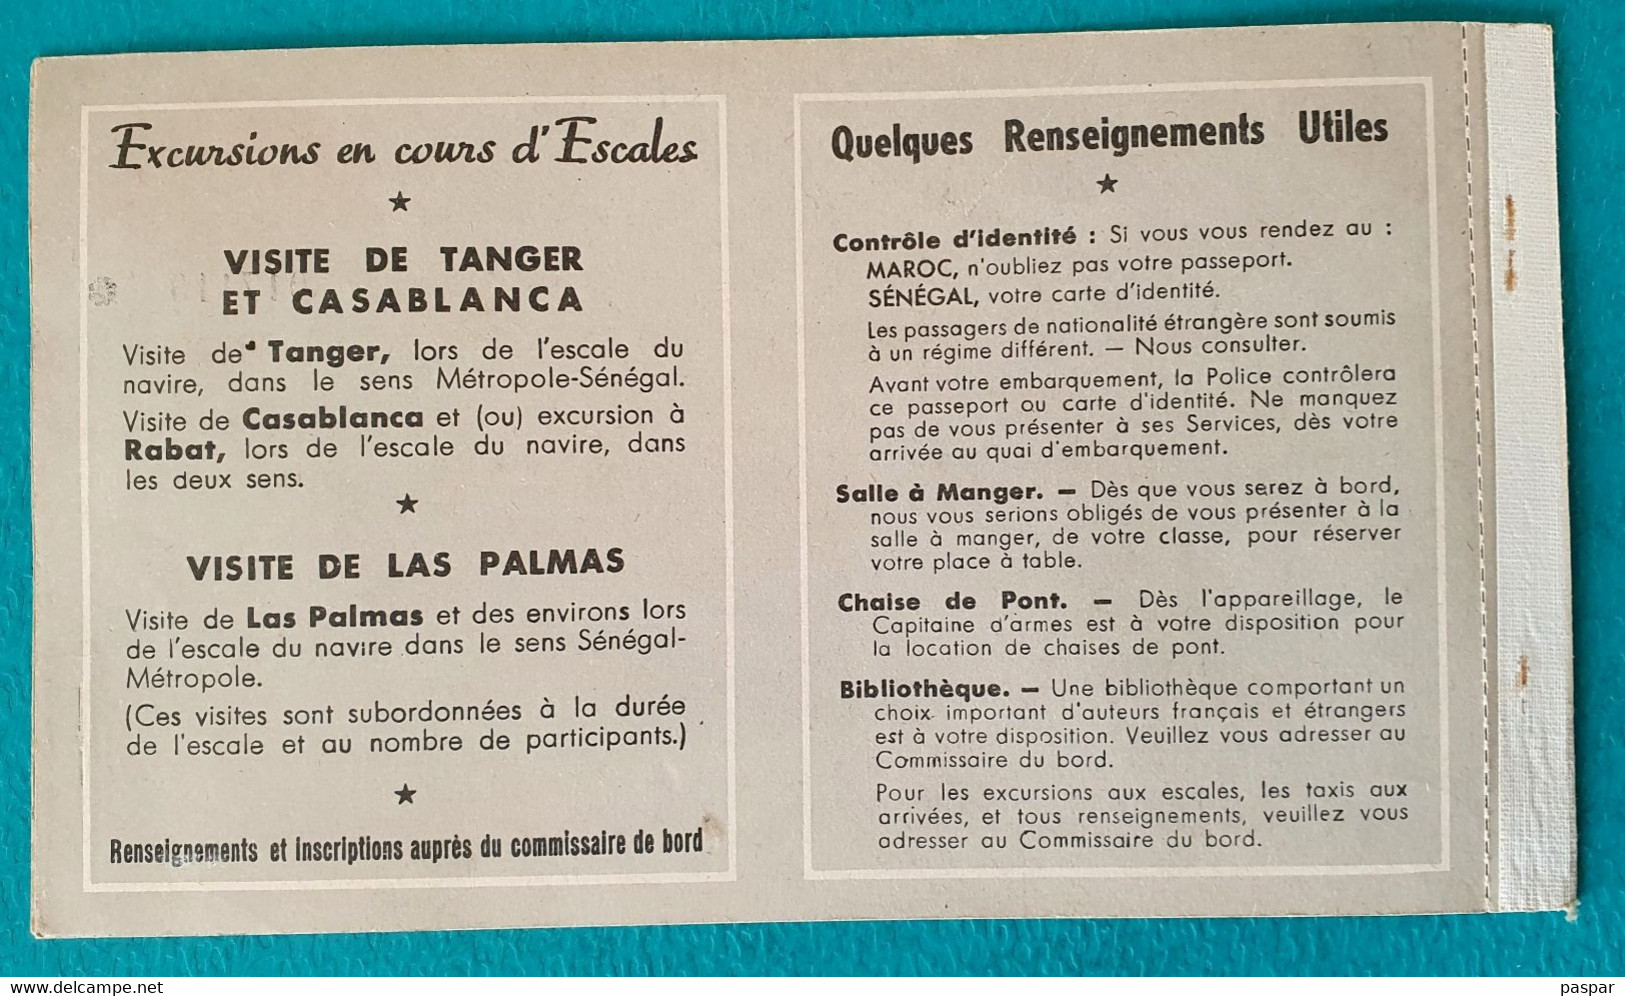 COMPAGNIE DE NAVIGATION PAQUET - BILLET DE PASSAGE ALLER SIMPLE DAKAR MARSEILLE 1ere CLASSE SENEGAL - 1956 - World